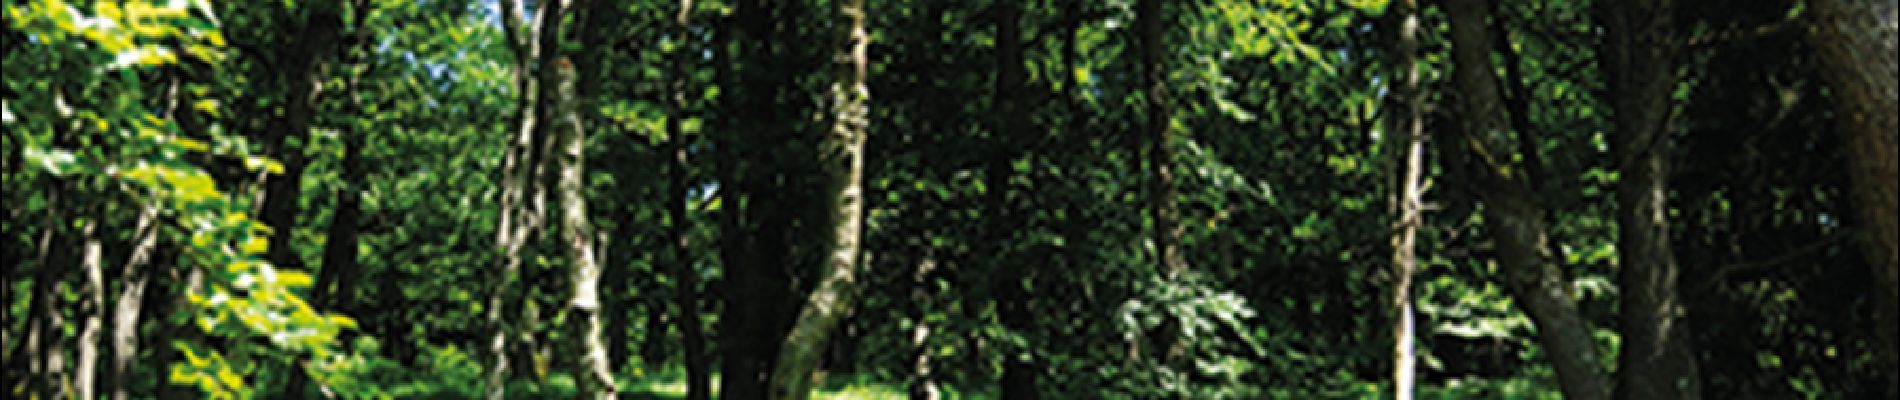 POI Baelen - 3 – Belles forêts feuillues - Photo